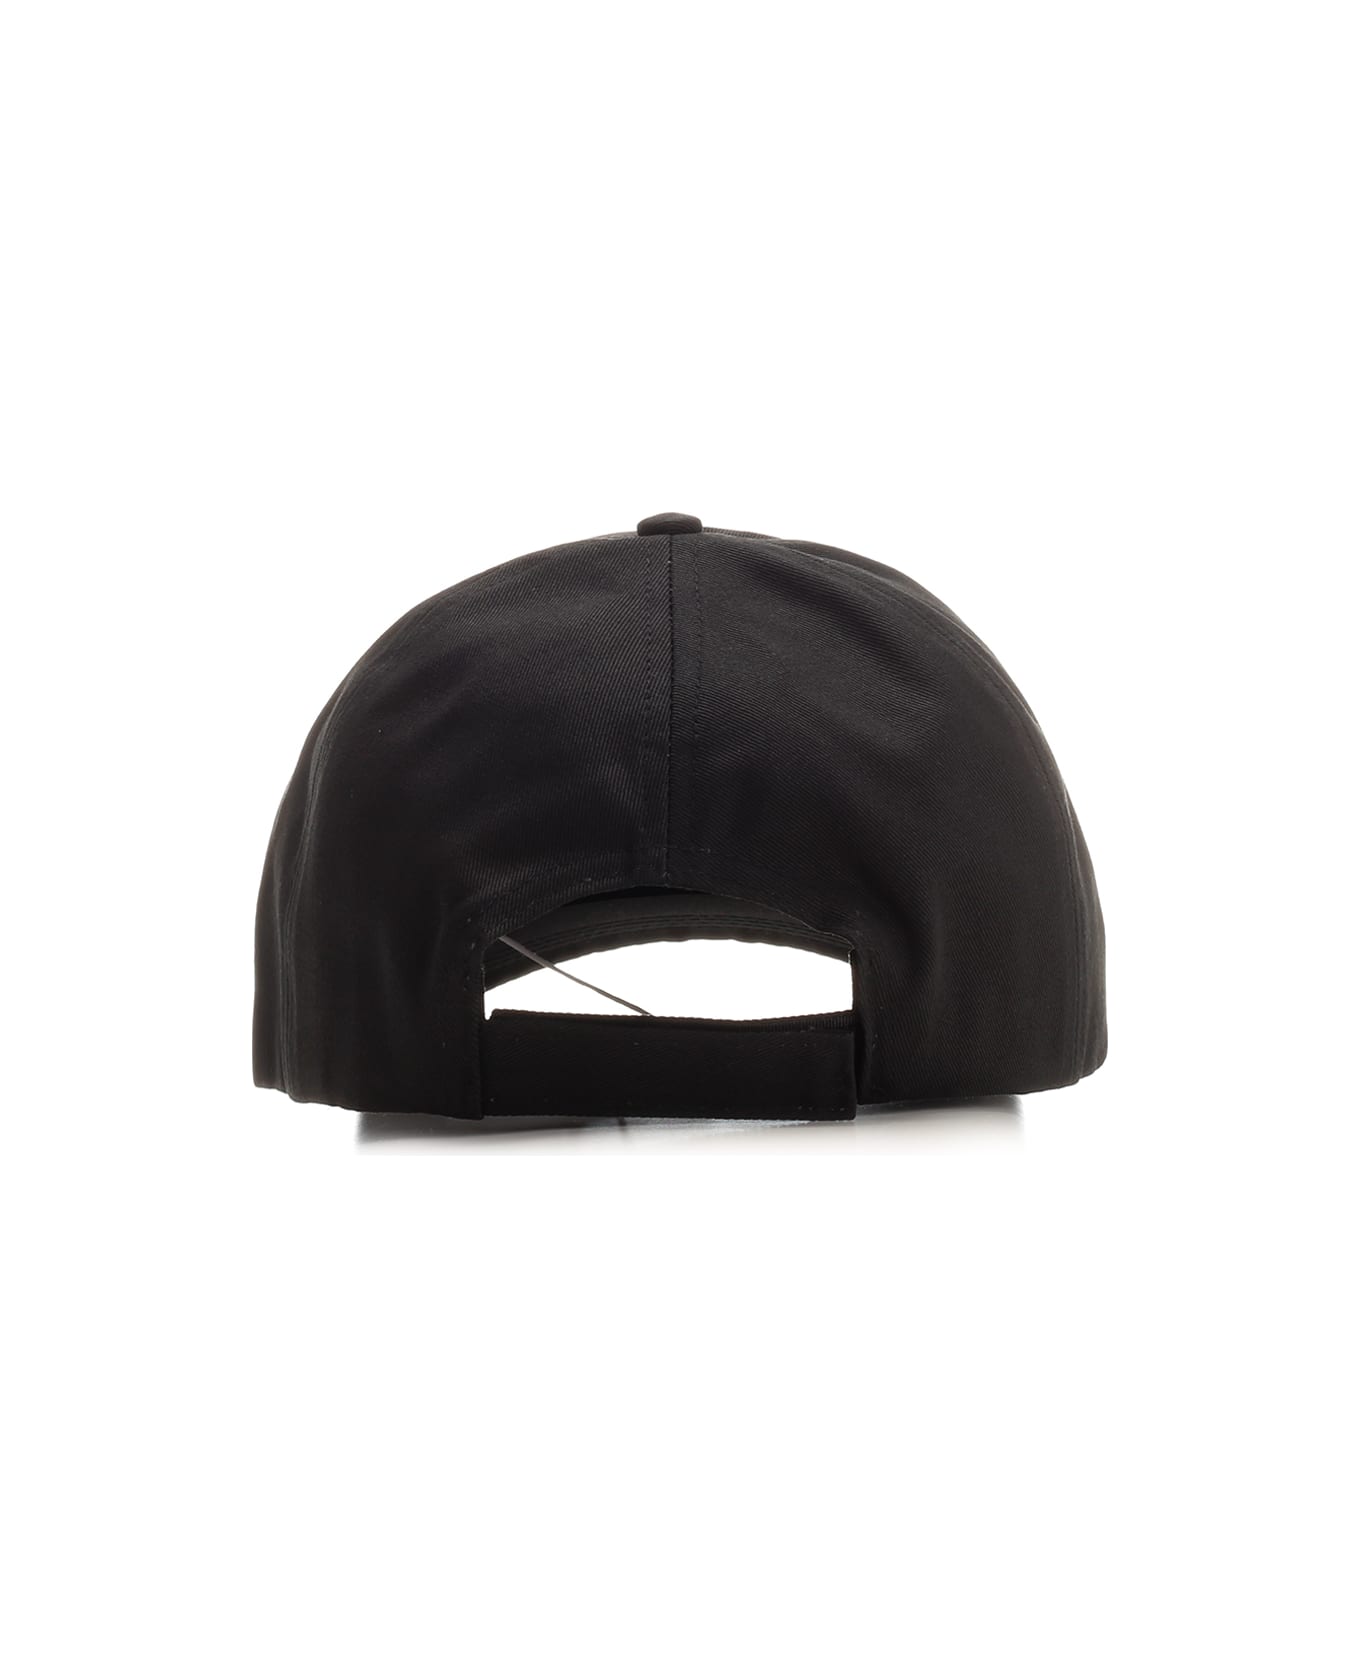 Ganni Signature Baseball Cap - Black 帽子